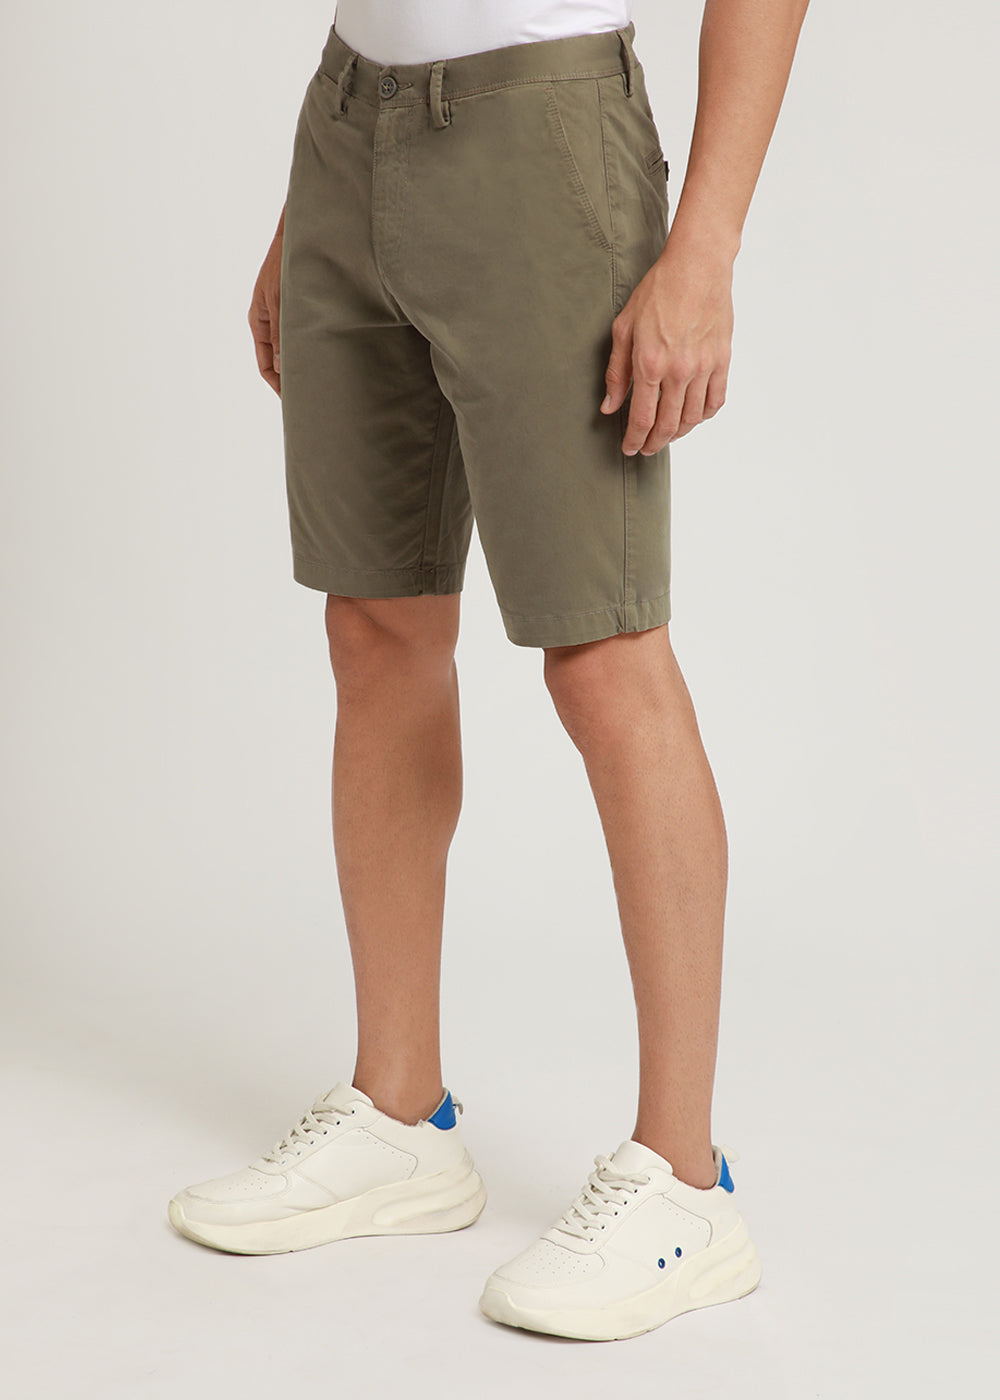 Light Olive Shorts